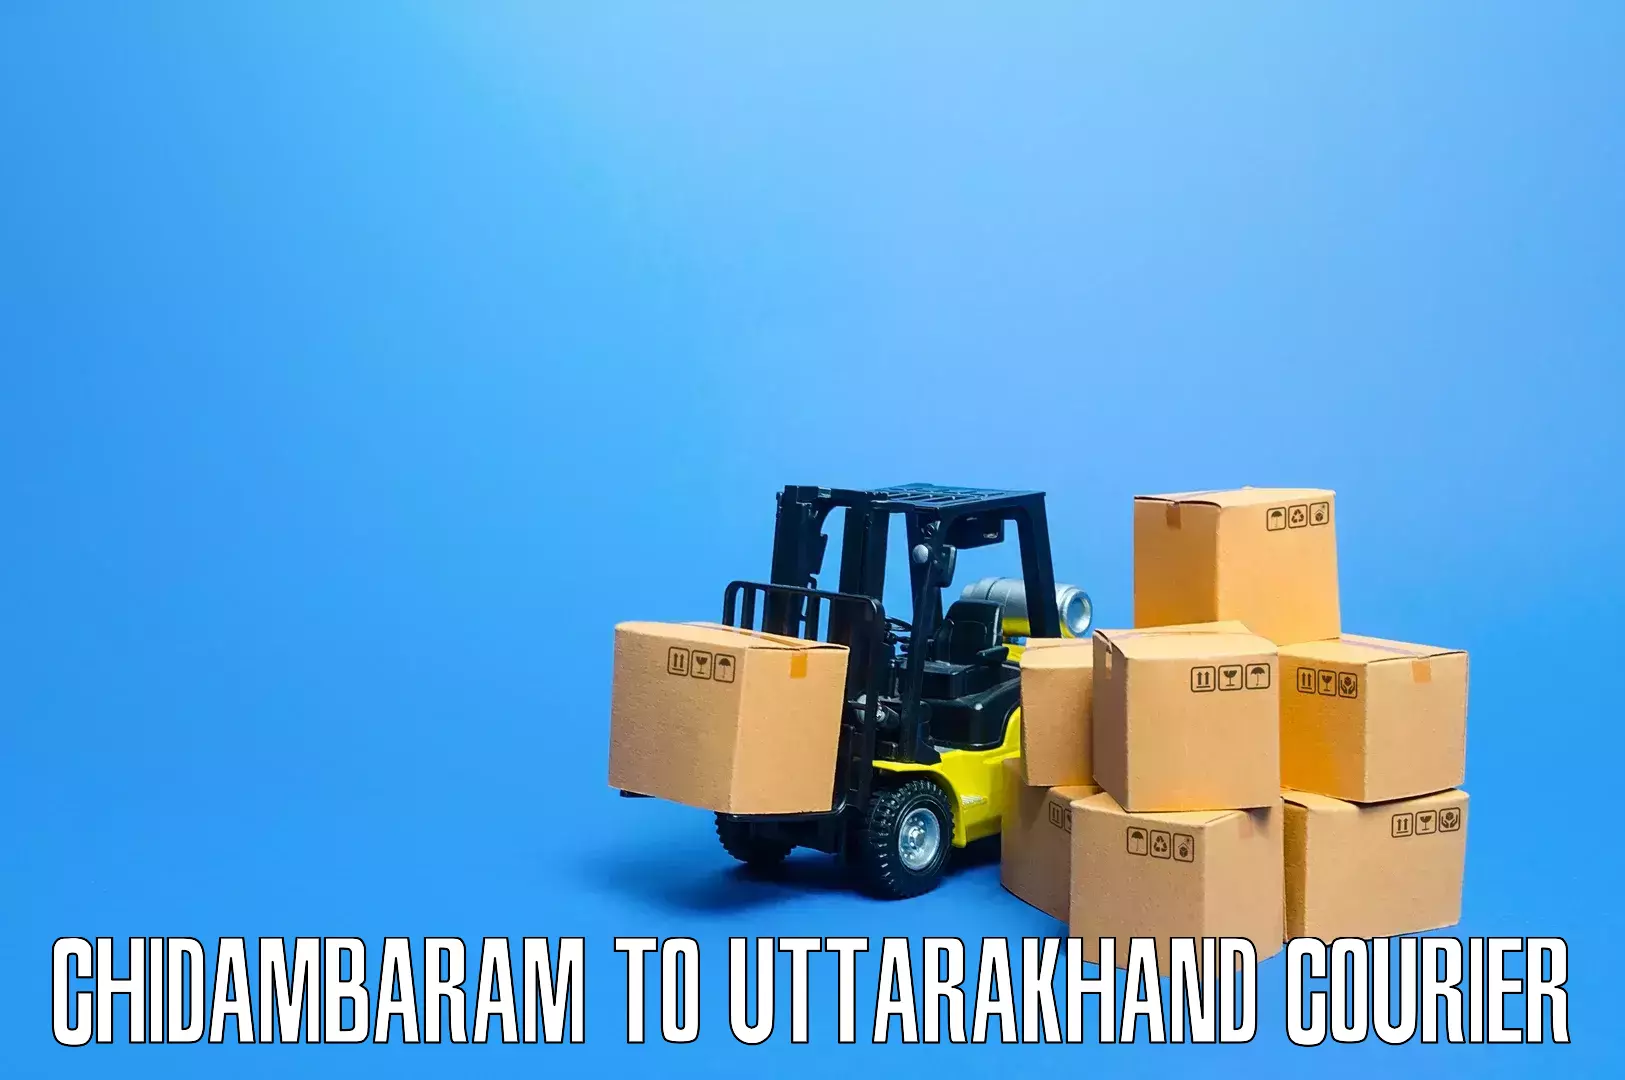 Professional movers Chidambaram to Bhagwanpur